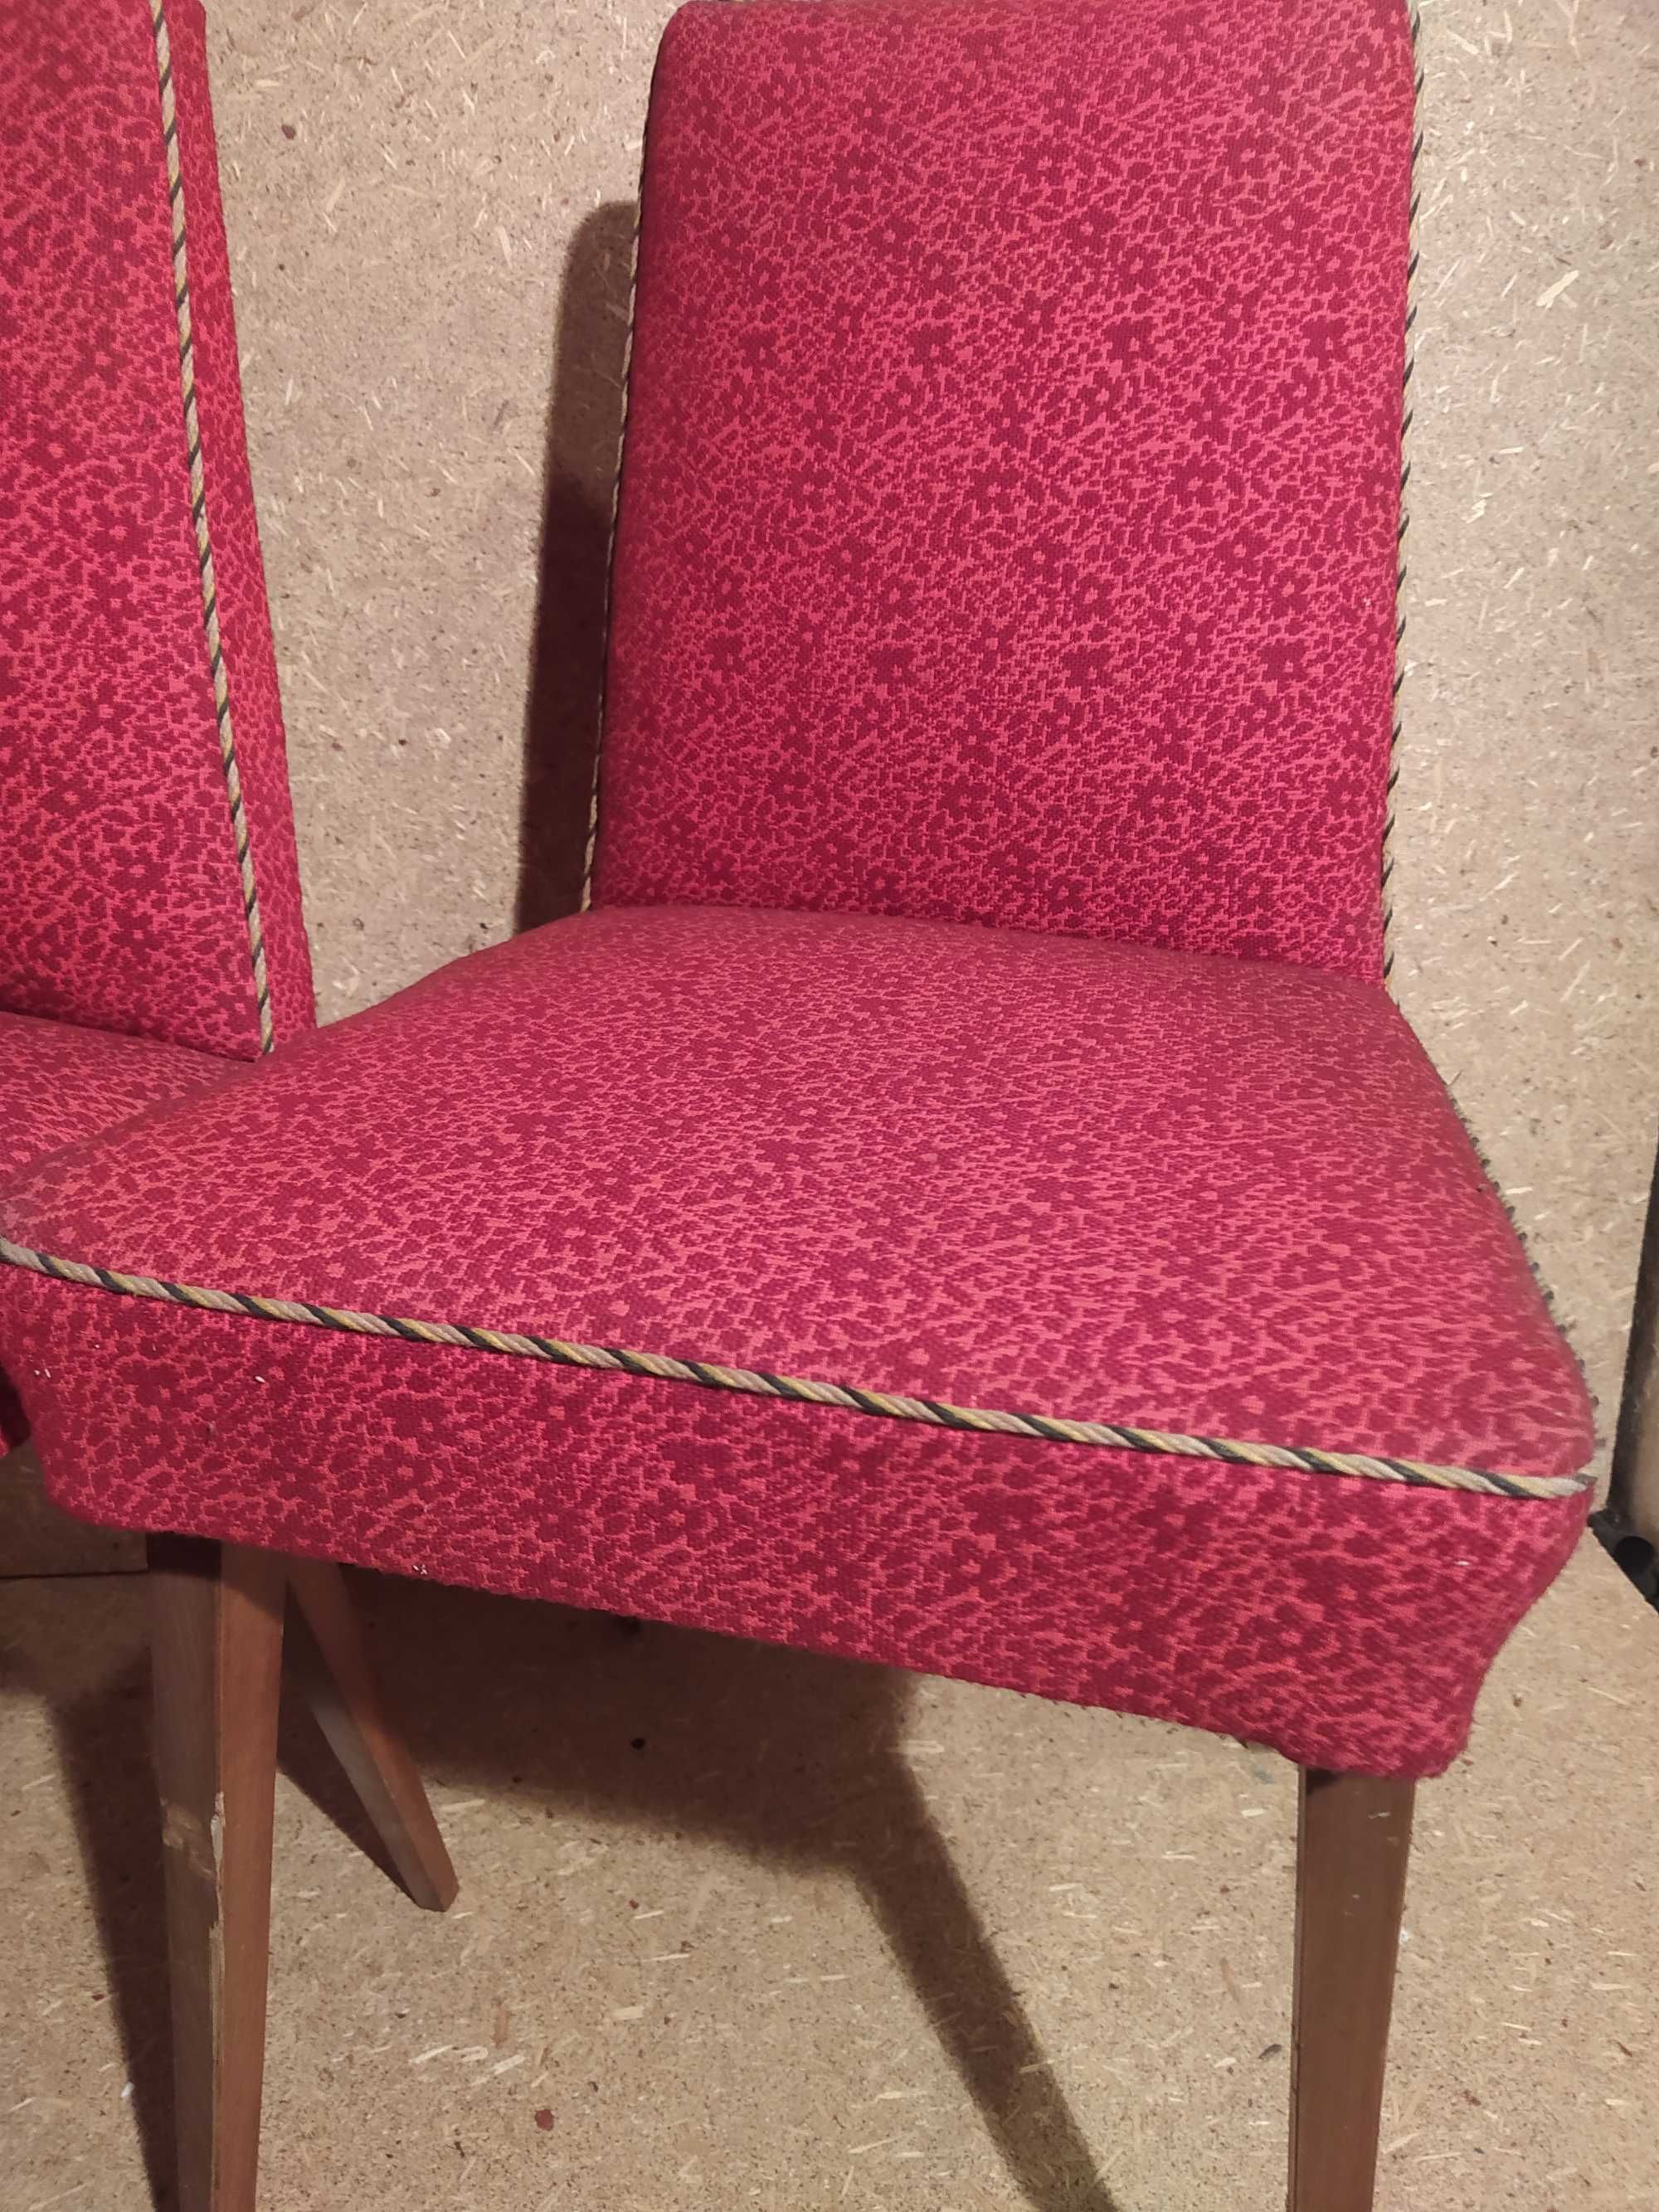 Krzesło / fotel czerwony melanż zestaw 4 szt. vintage lata 70 PRL